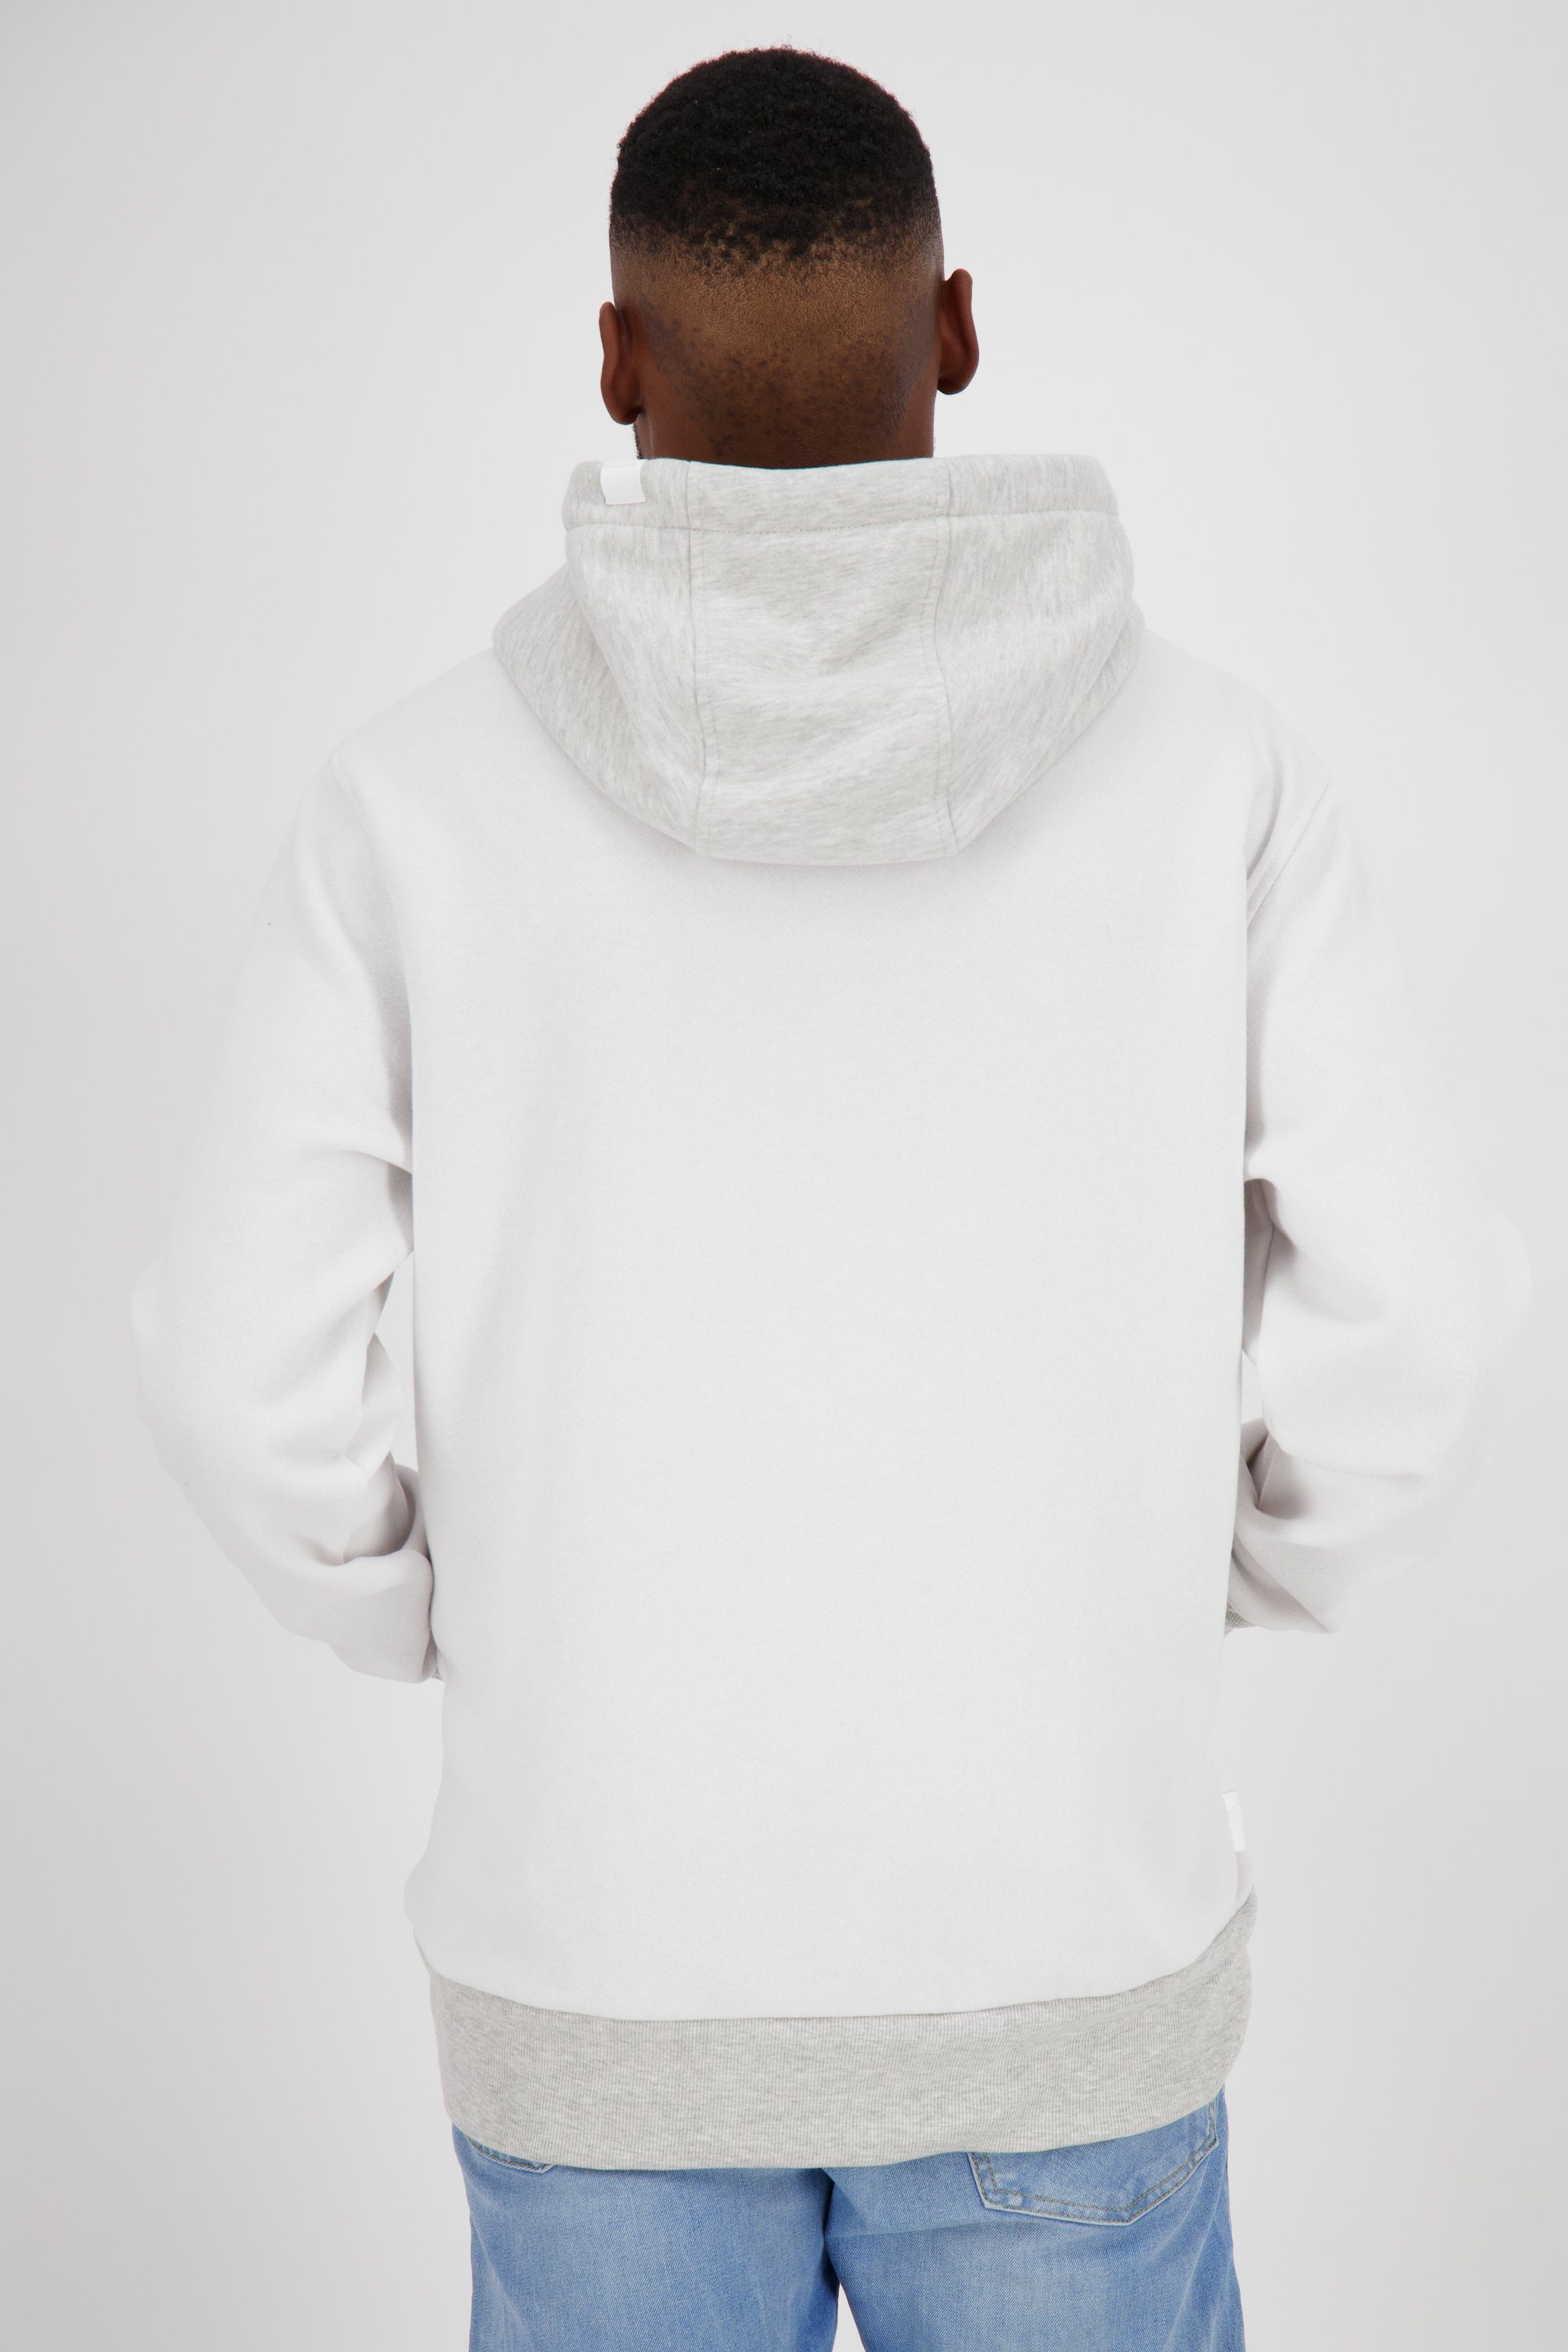 Alife Herren Sweat white Sweatshirt Kapuzensweatshirt MatteoAK Kapuzensweatshirt, Kickin &